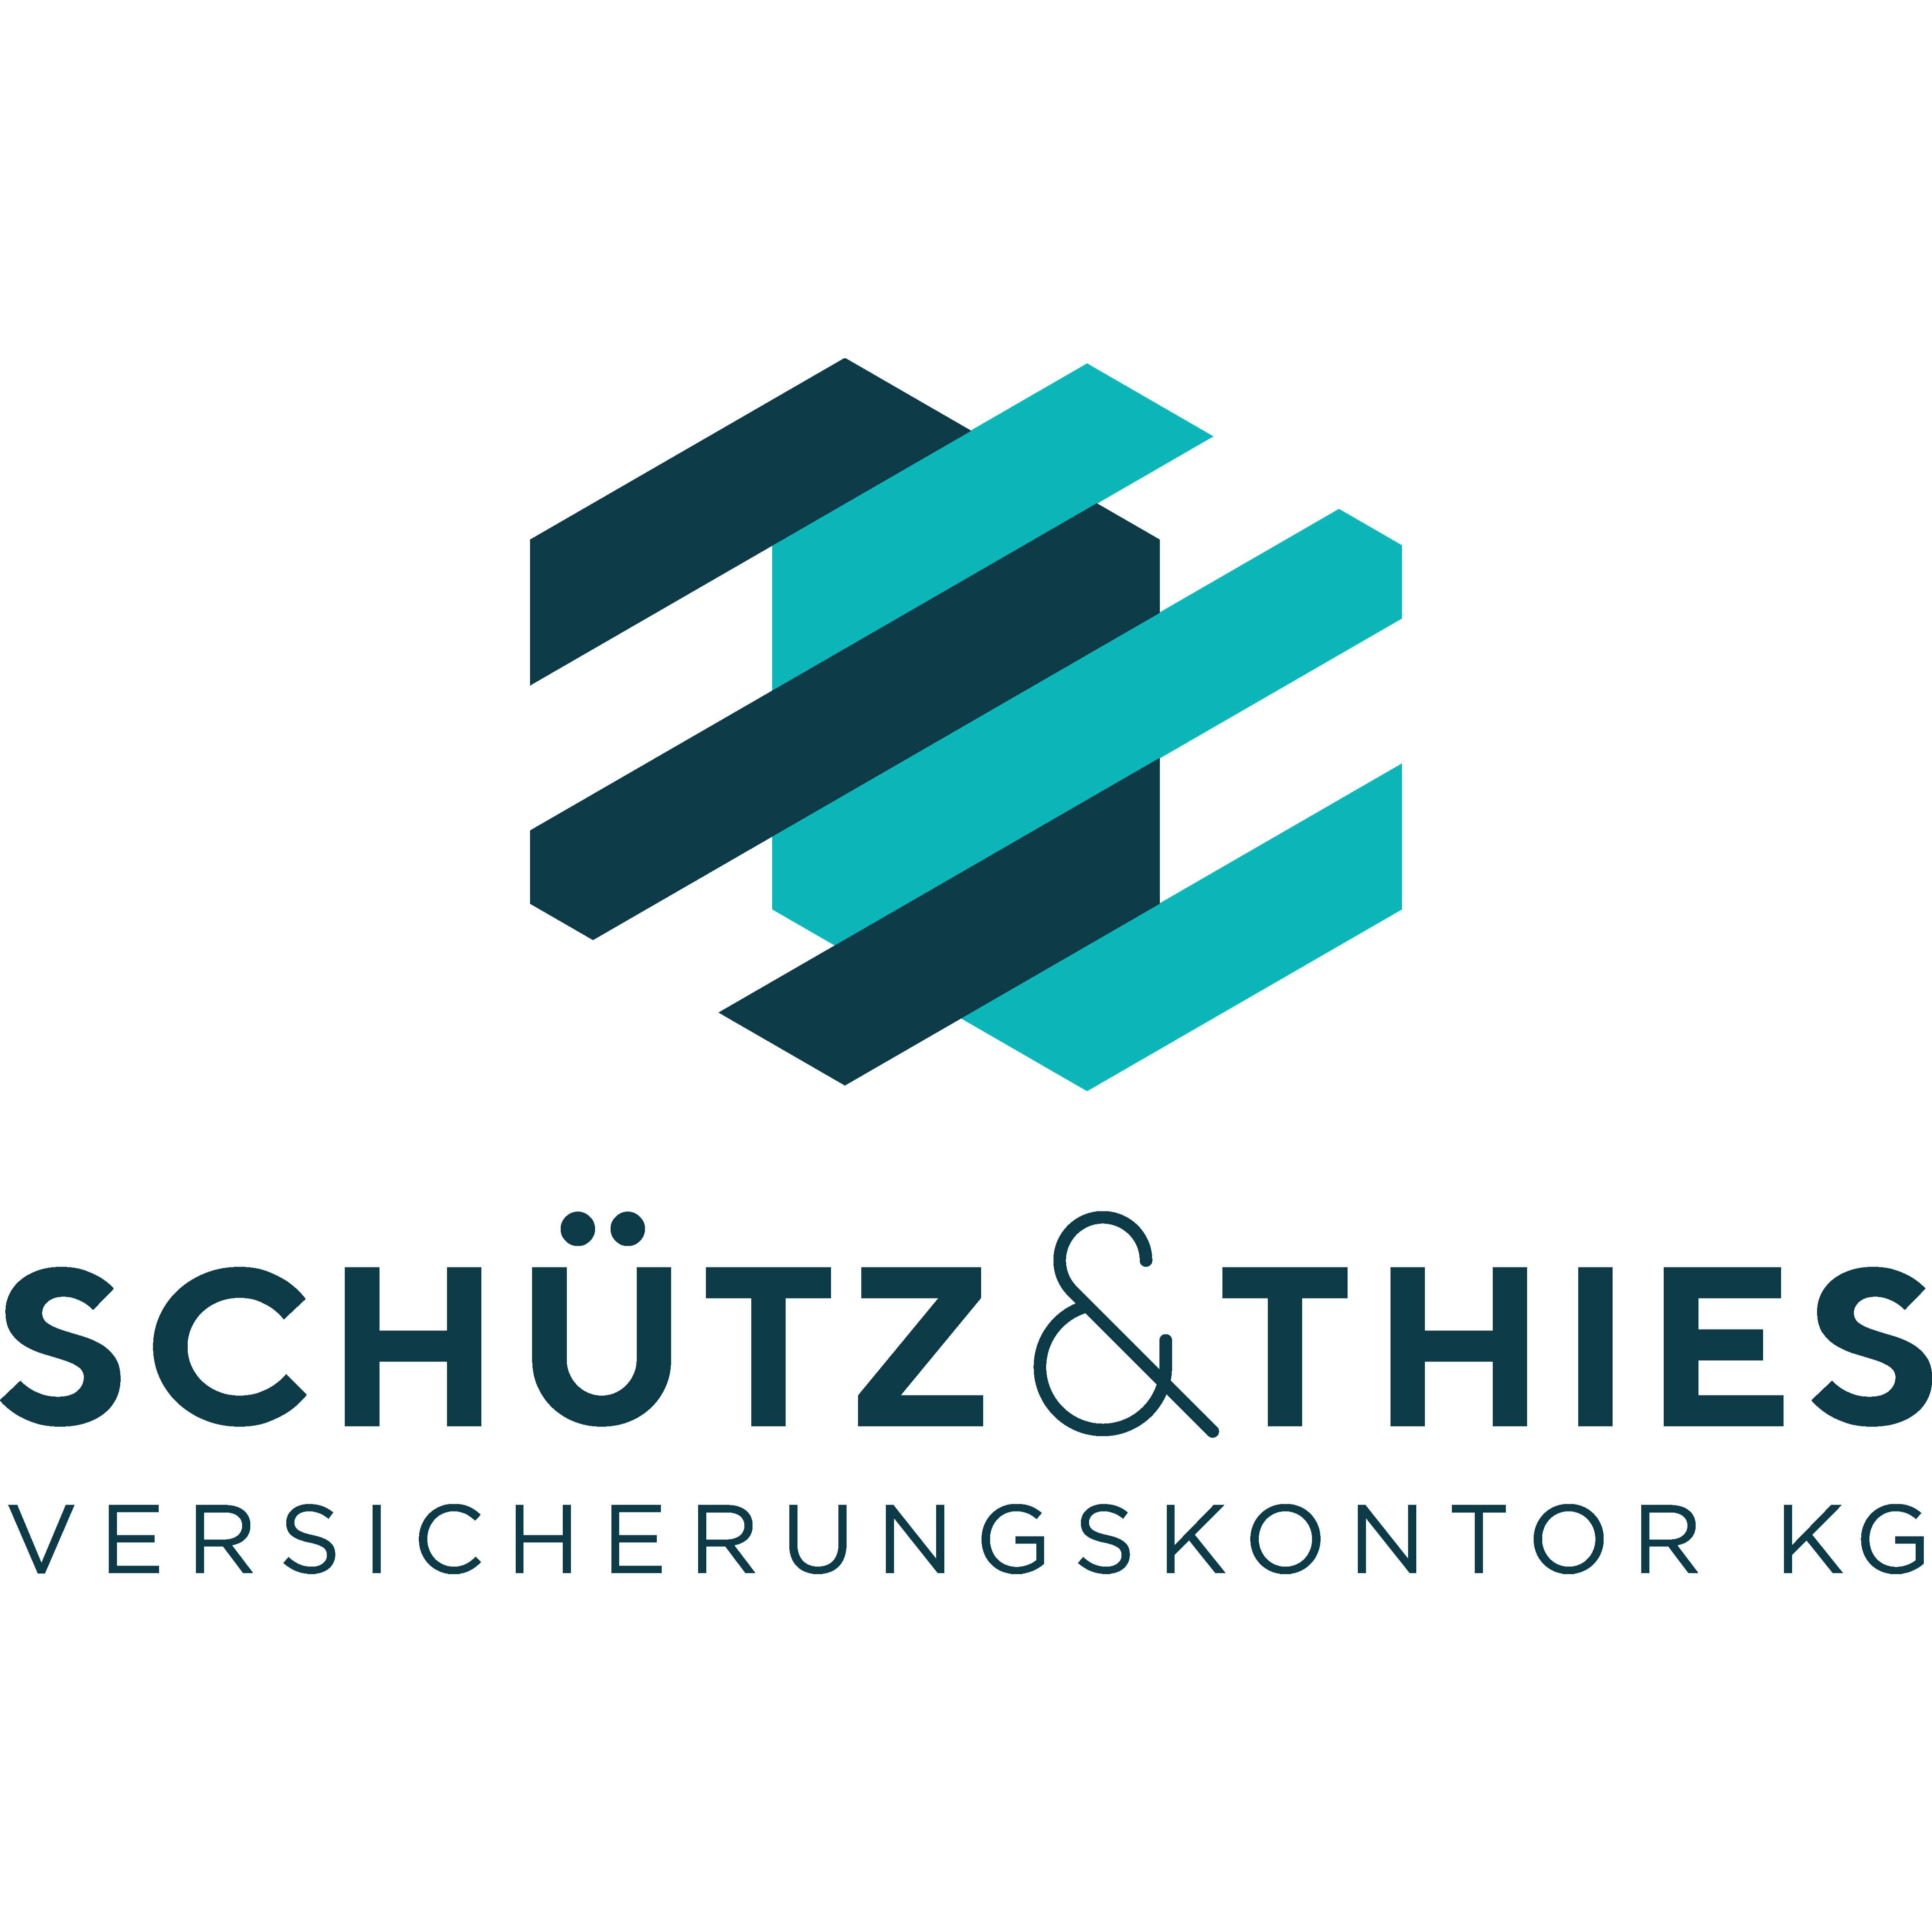 Schütz & Thies Versicherungskontor KG in Bremen - Logo